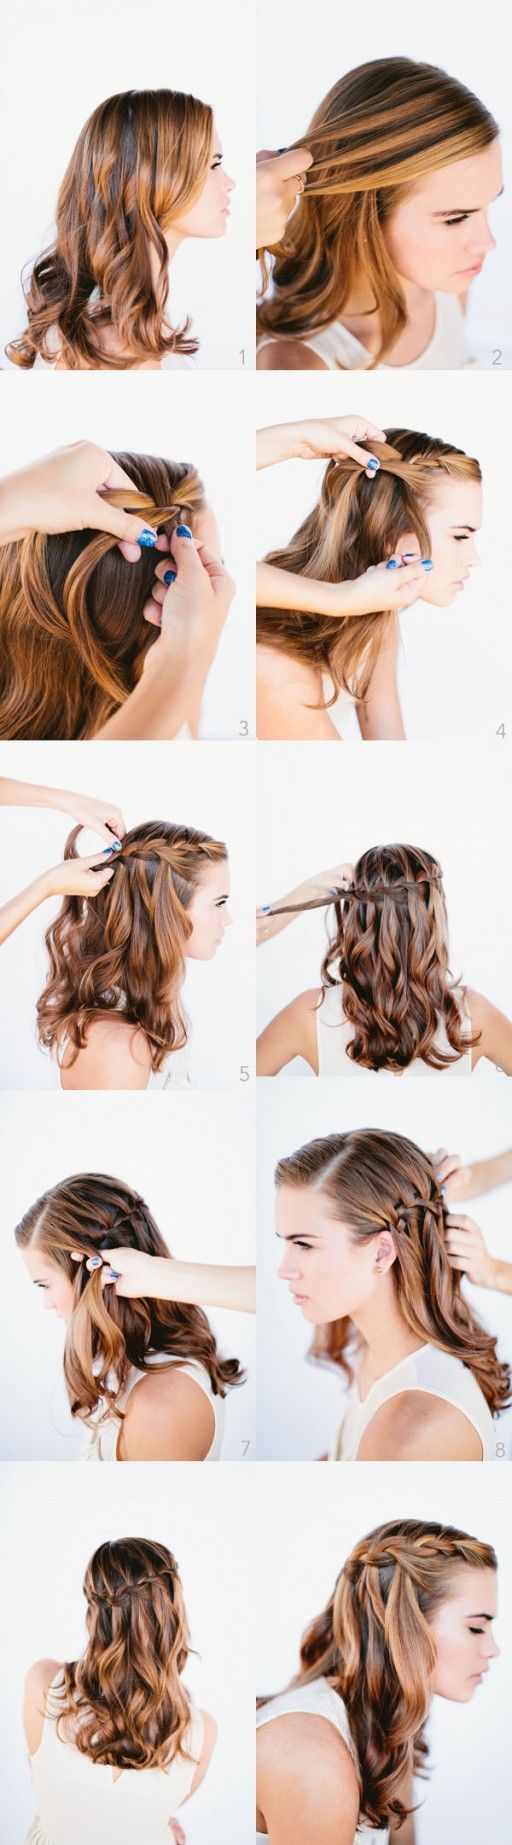 hairstyles-braids-girls